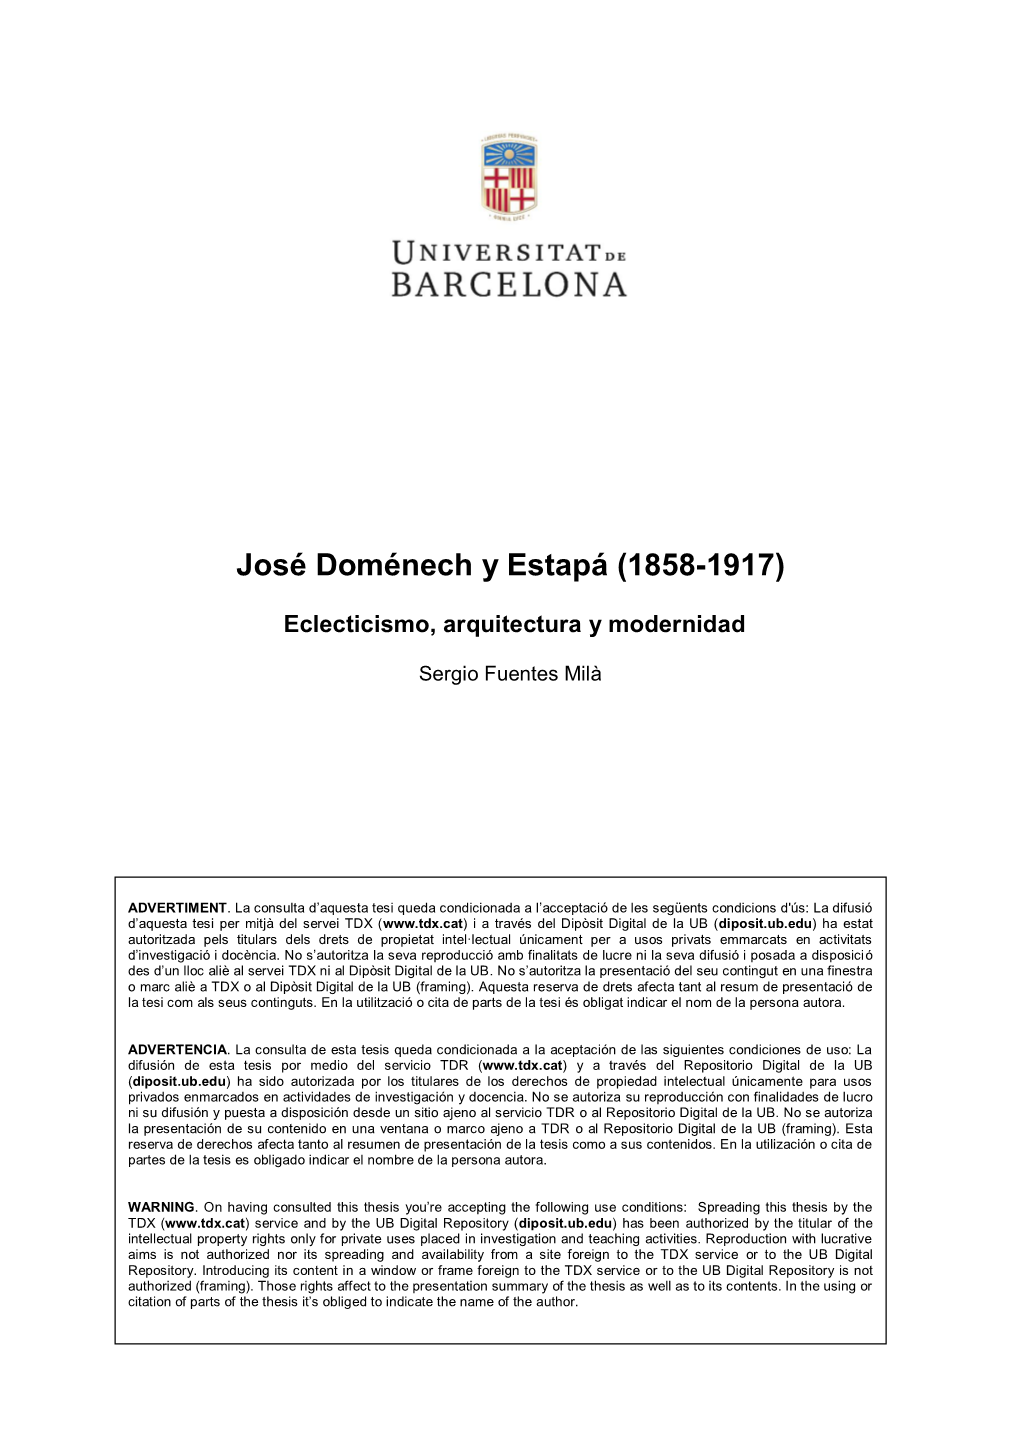 JOSÉ DOMÉNECH Y ESTAPÁ (1858-1917) Eclecticismo, Arquitectura Y Modernidad